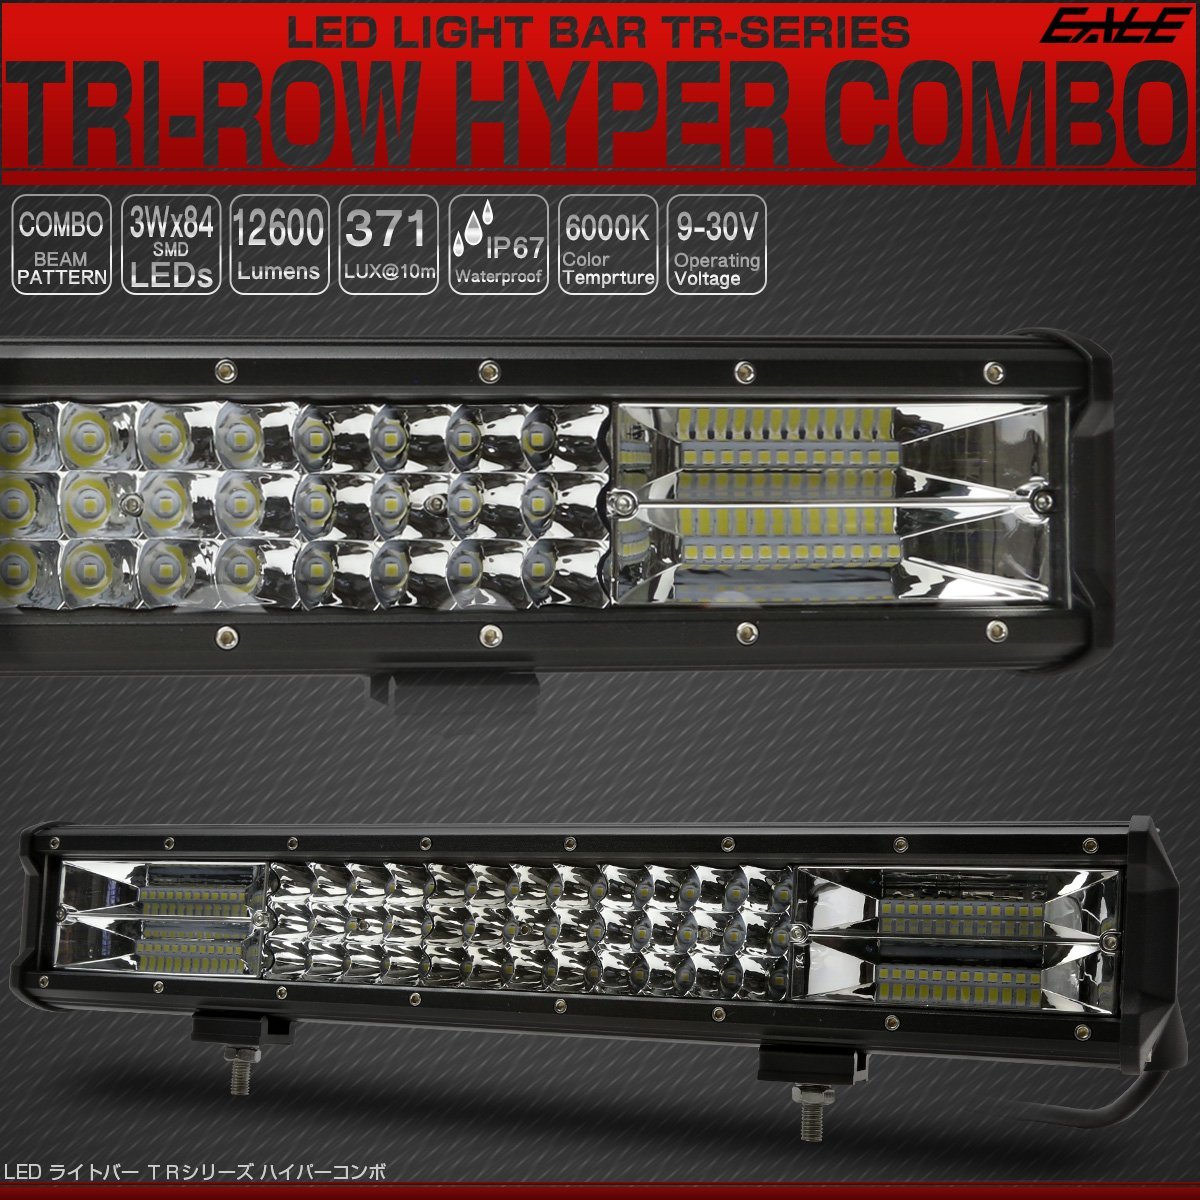 LED ライトバー 45cm 252W TRI-ROW ハイパーコンボ 18インチ 12600lm 12V 24V 対応 作業灯 ワークライト P-522